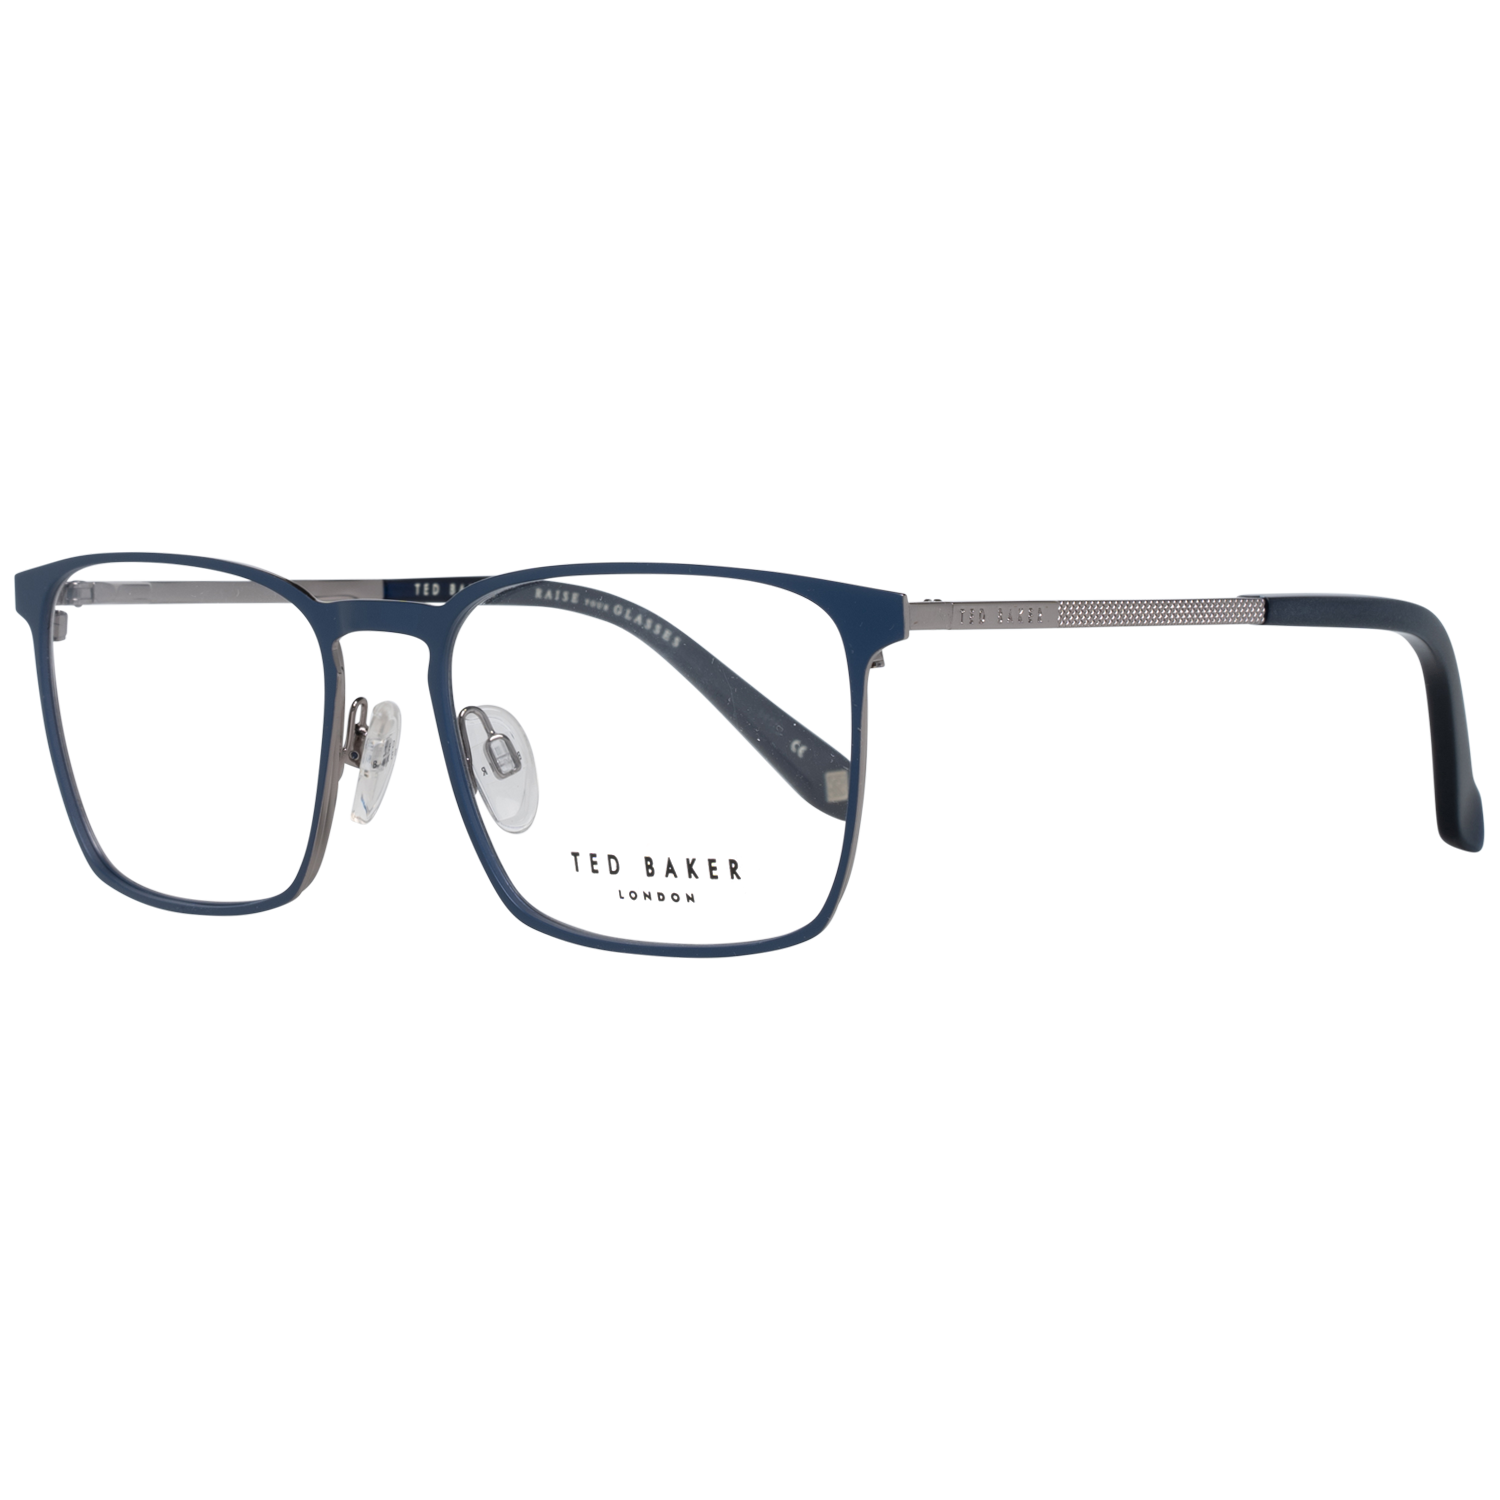 Ted Baker Frames Ted Baker Optical Frame Prescription Glasses TB4270 603 53 Patton Eyeglasses Eyewear UK USA Australia 